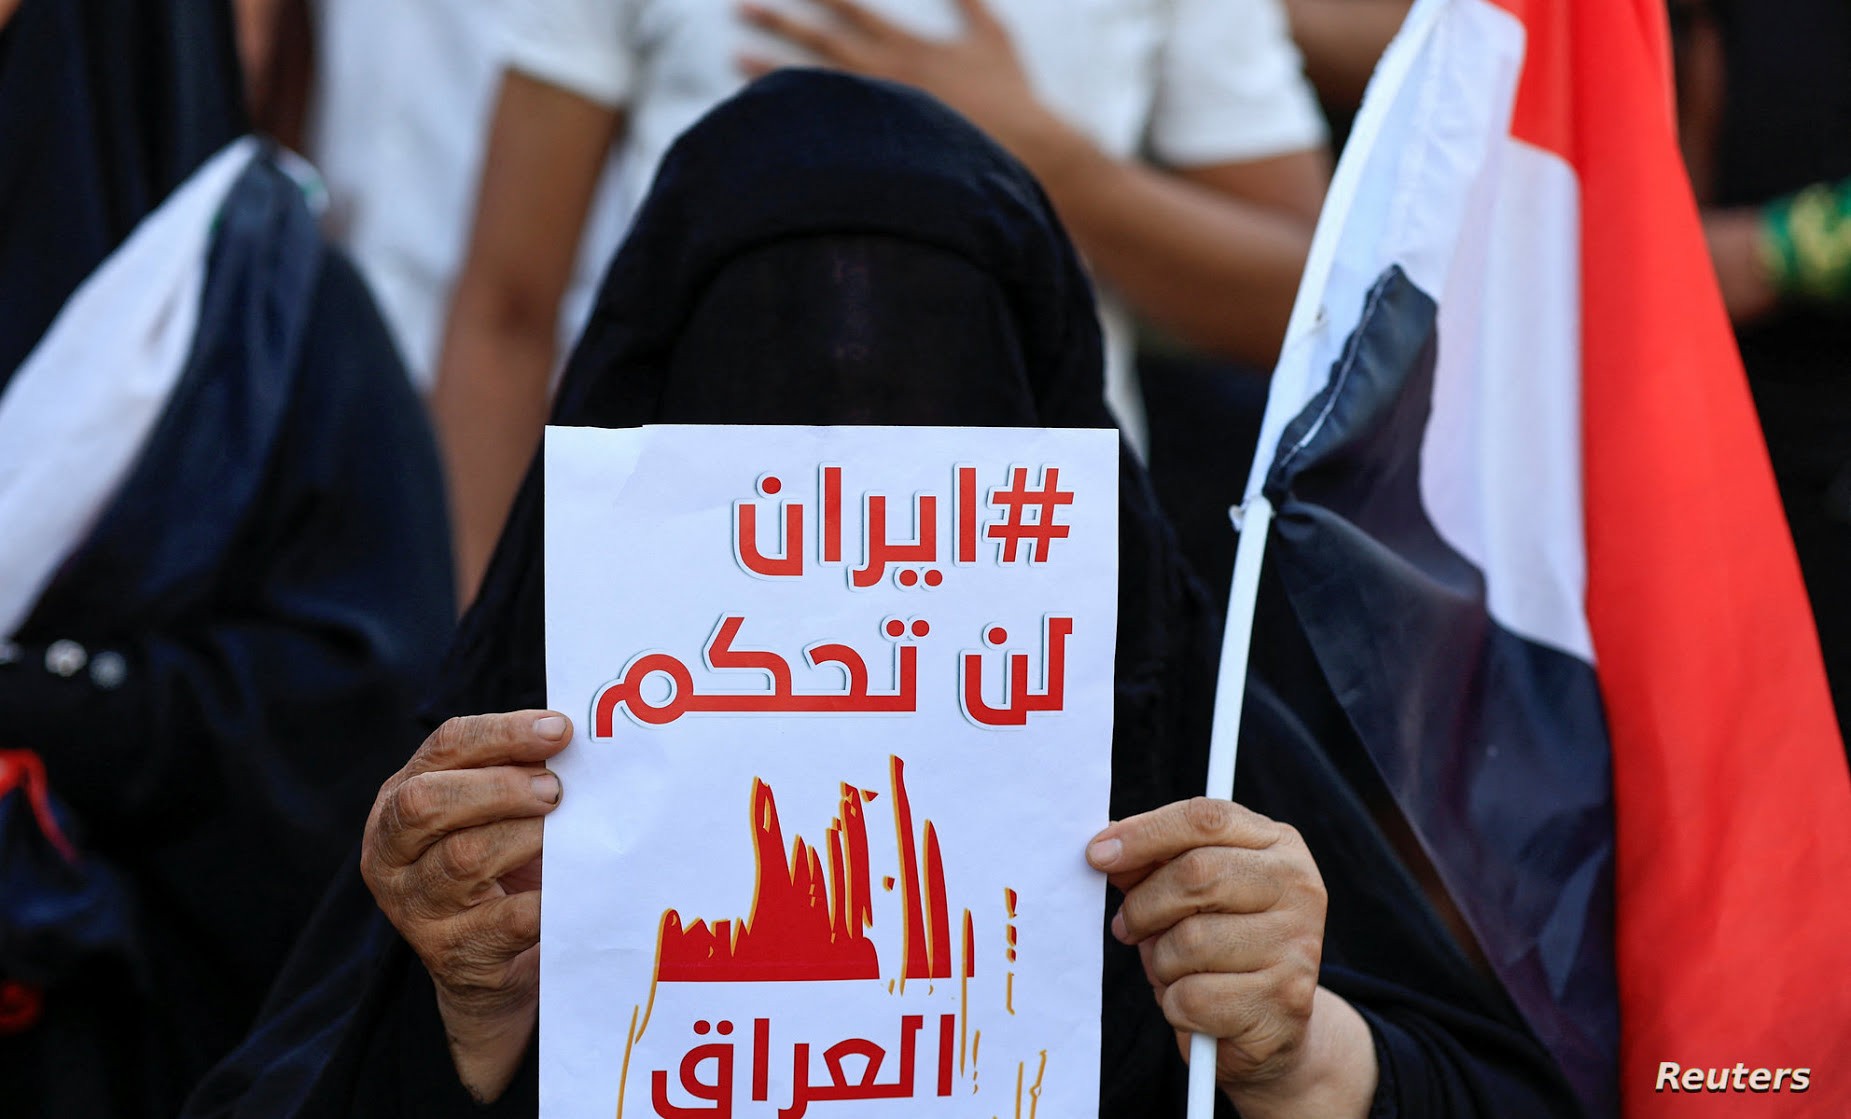 المتظاهرون رددوا شعارات تندد بالتدخل الإيراني بالشأن العراقي مثل "إيران لن تحكم العراق، وهذا وعد إيران ما تحكم بعد".